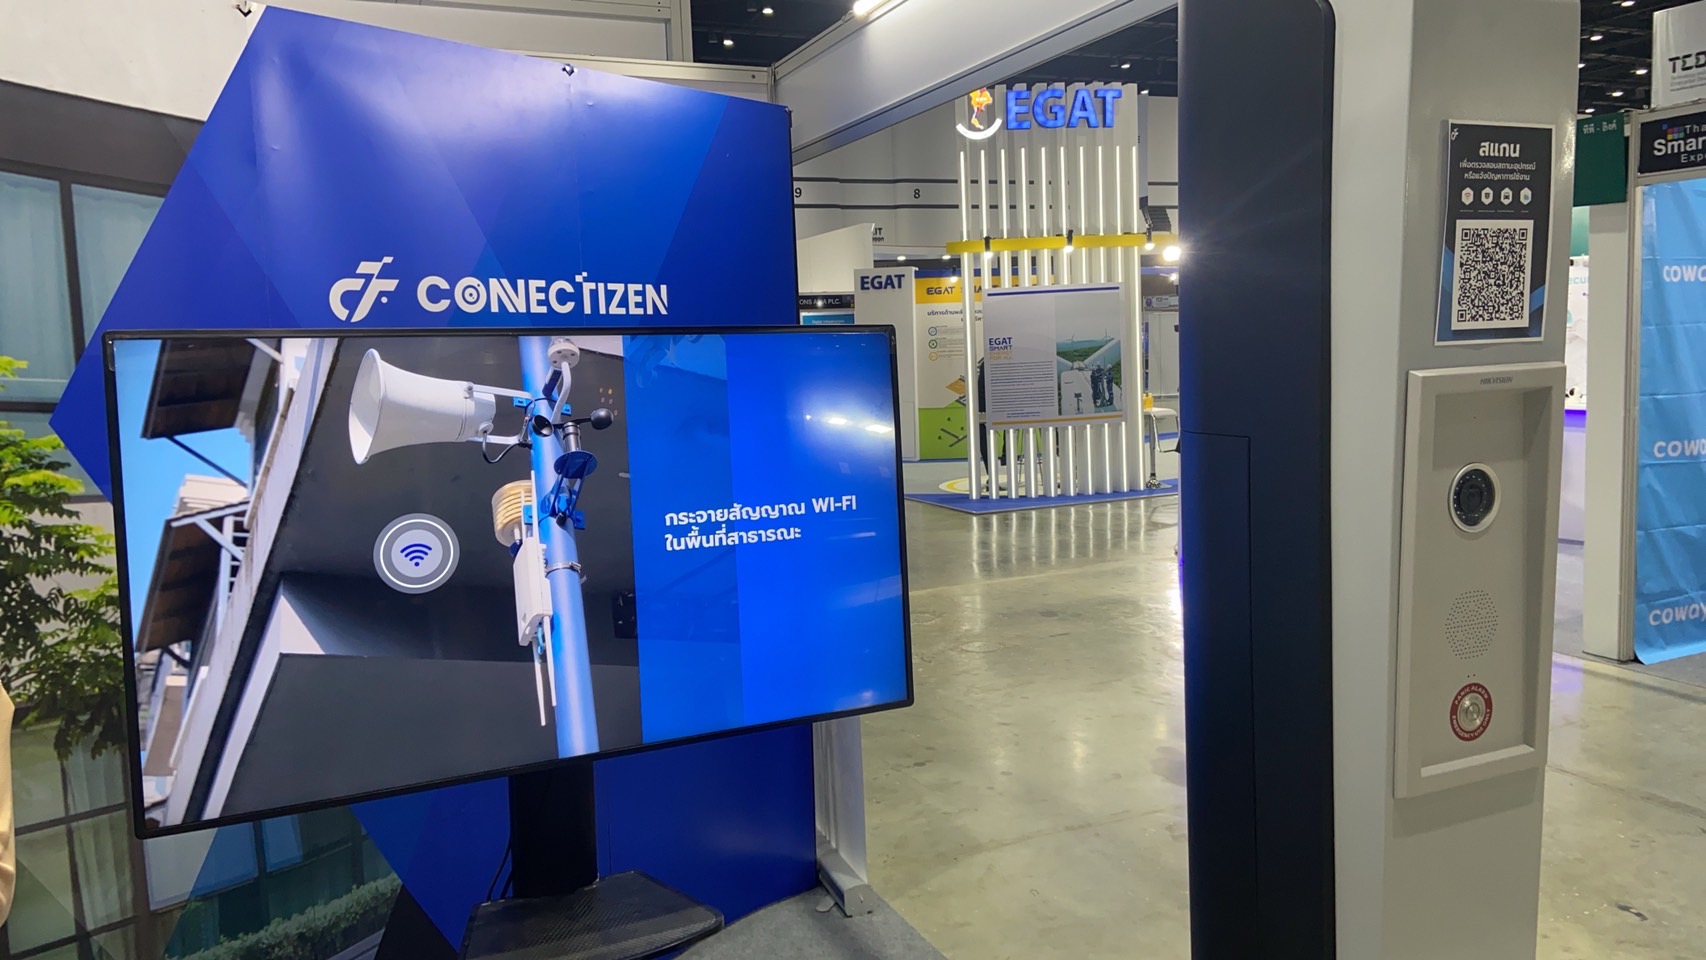 NVK48 เปิดตัวนวัตกรรม Connectizen Platform สำหรับบริหารจัดการ Smart Pole เสาอัจฉริยะรูปแบบใหม่ บริหารทั่วเมืองอัจฉริยะ